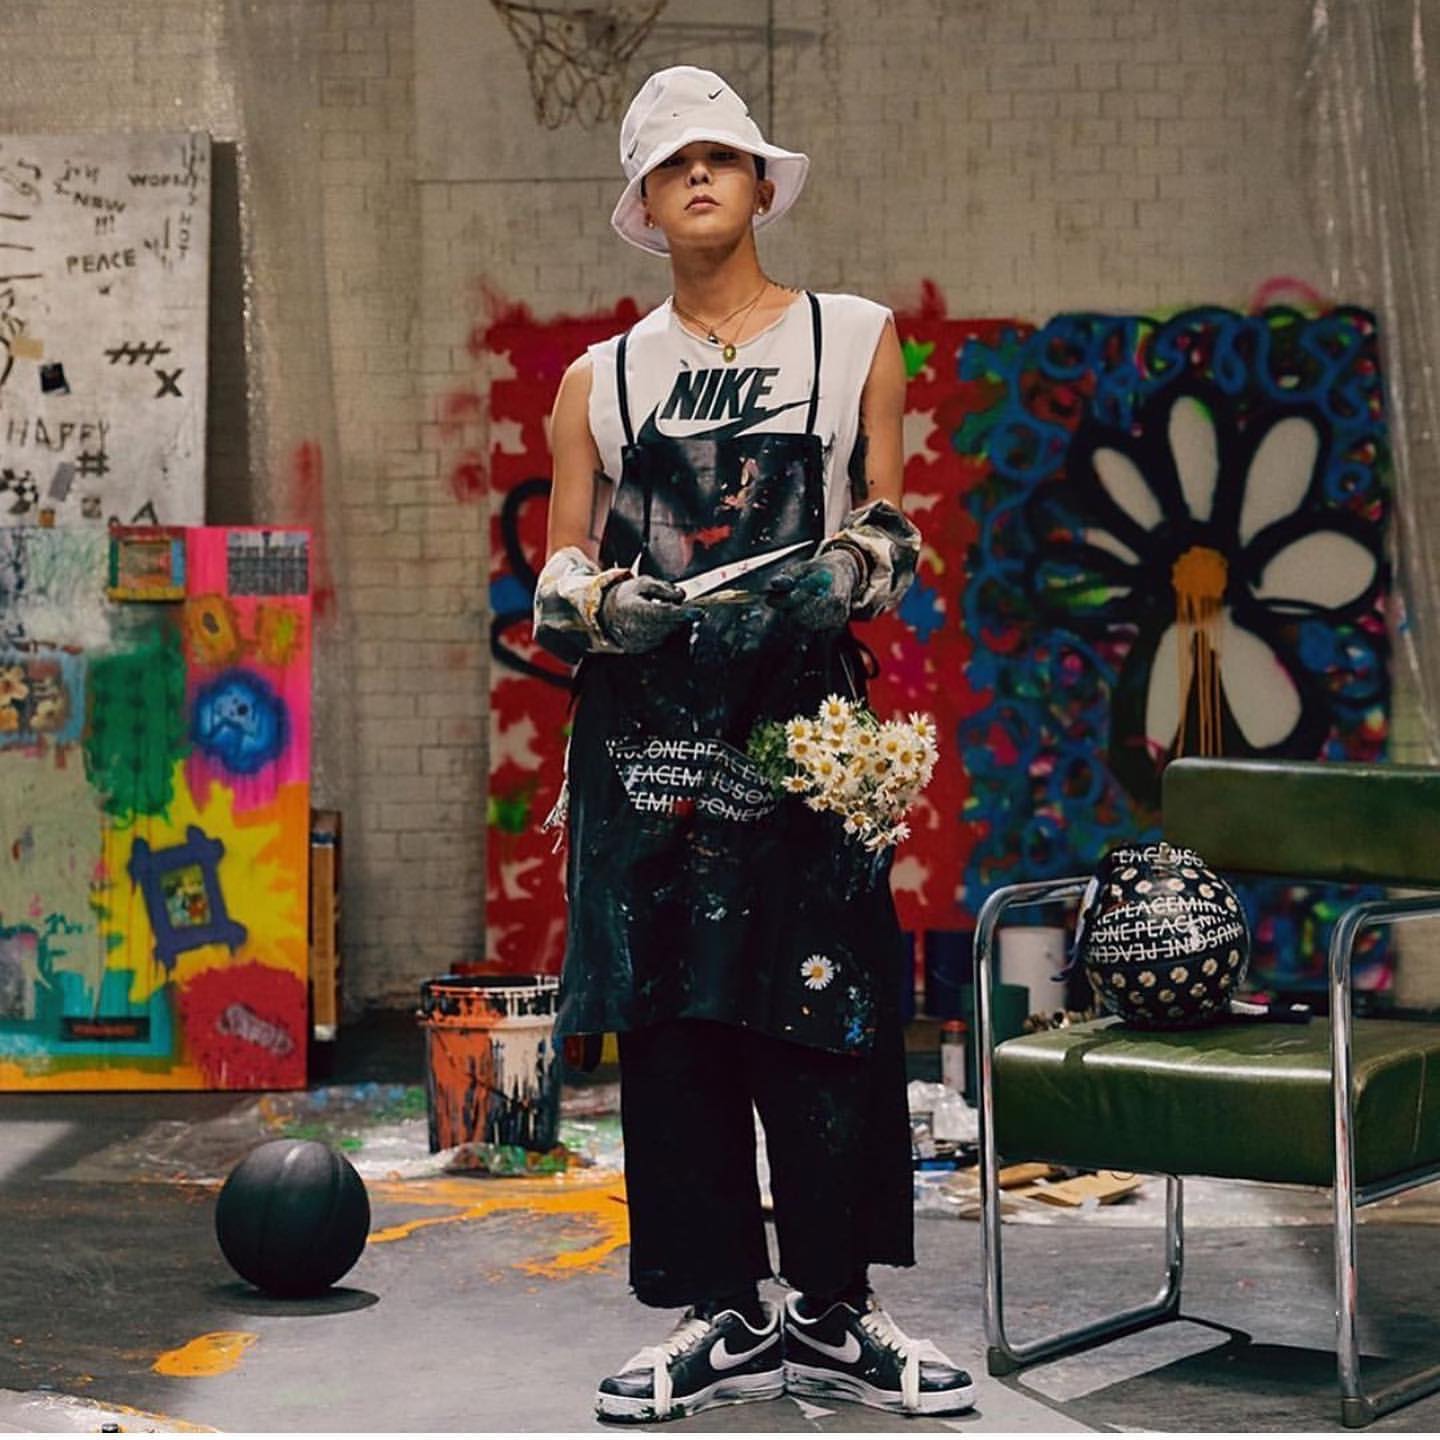 Giày G-Dragon: Bạn đang tìm kiếm một đôi giày đặc biệt để cùng làm mới phong cách của mình? Tham khảo ngay hình ảnh về giày G-Dragon – mẫu giày được thiết kế bởi chính anh chàng thần tượng này. Với kiểu dáng đầy cá tính, đôi giày này chắc chắn sẽ khiến bạn nổi bật trong mọi bữa tiệc.